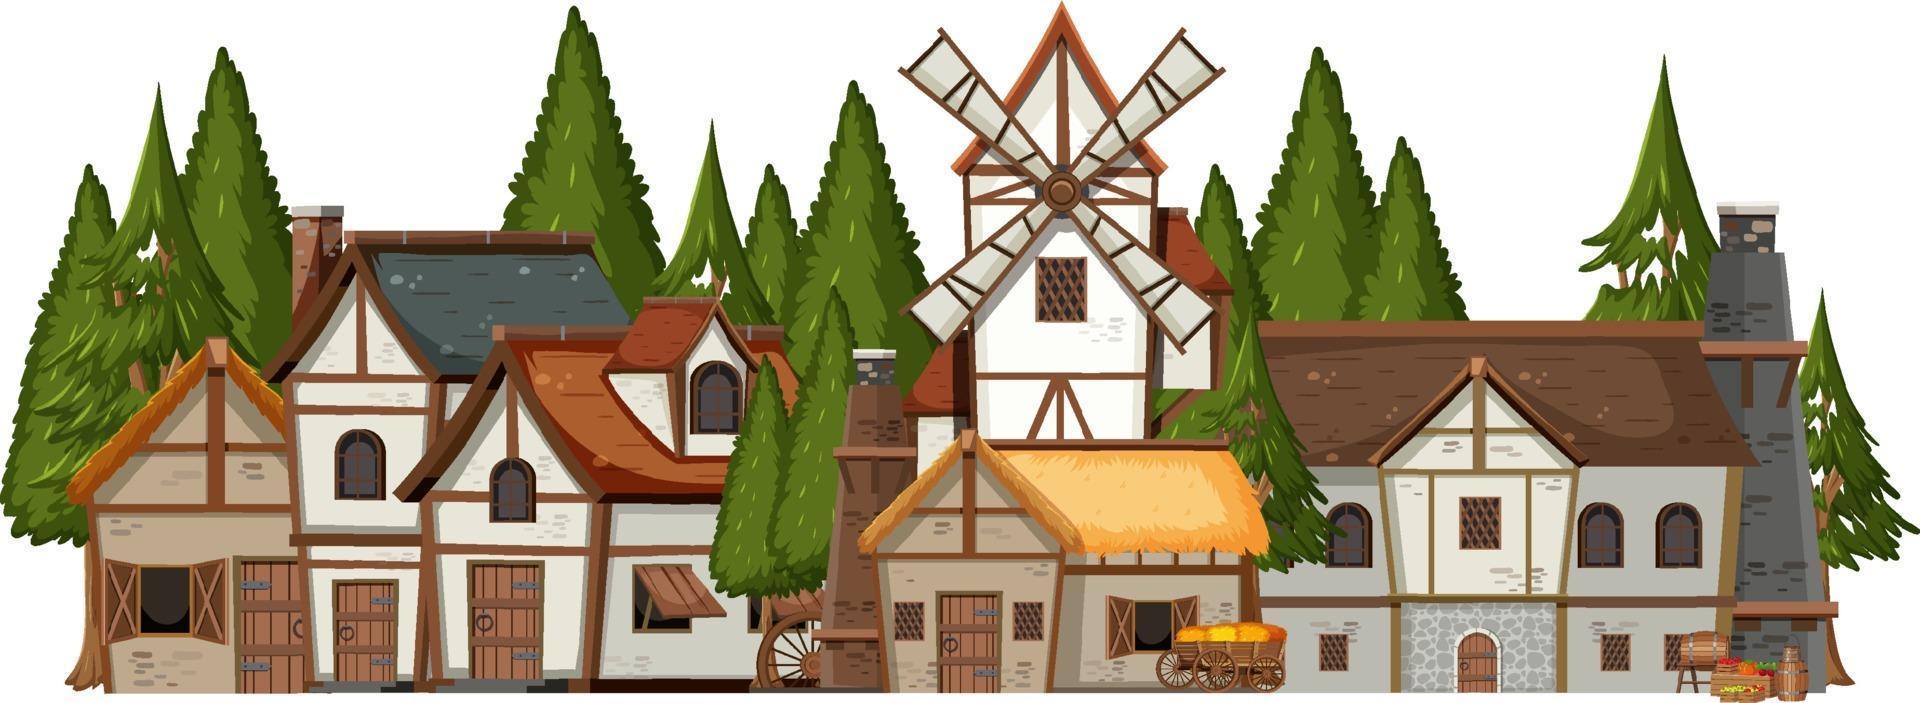 pueblo medieval con bosque de pinos vector